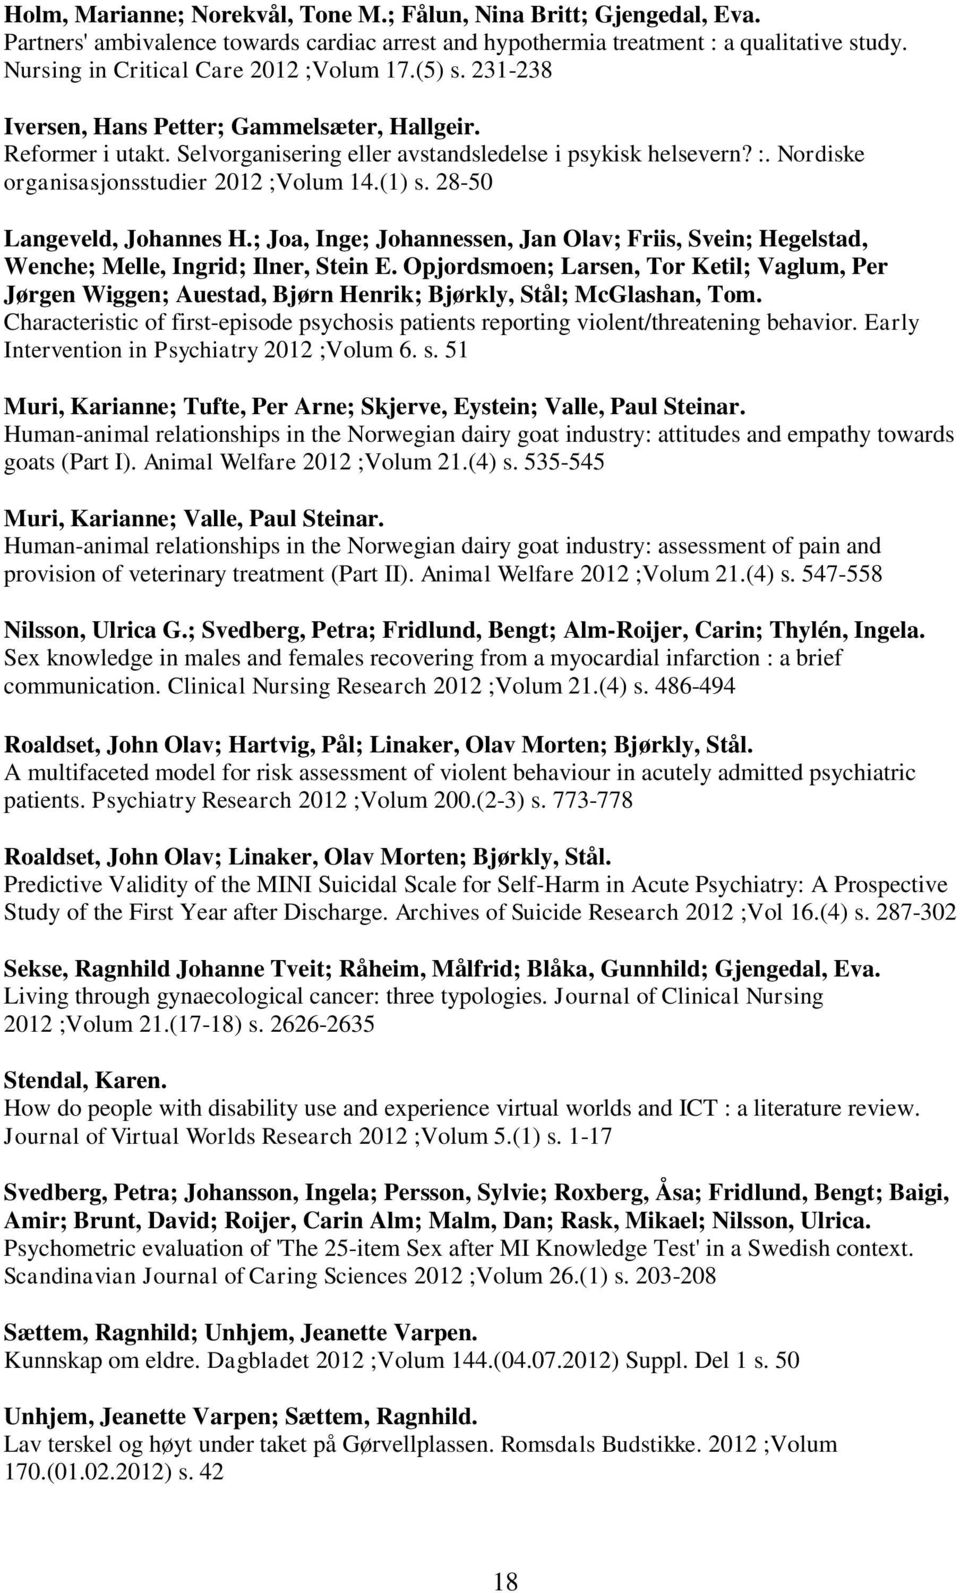 Nordiske organisasjonsstudier 2012 ;Volum 14.(1) s. 28-50 Langeveld, Johannes H.; Joa, Inge; Johannessen, Jan Olav; Friis, Svein; Hegelstad, Wenche; Melle, Ingrid; Ilner, Stein E.